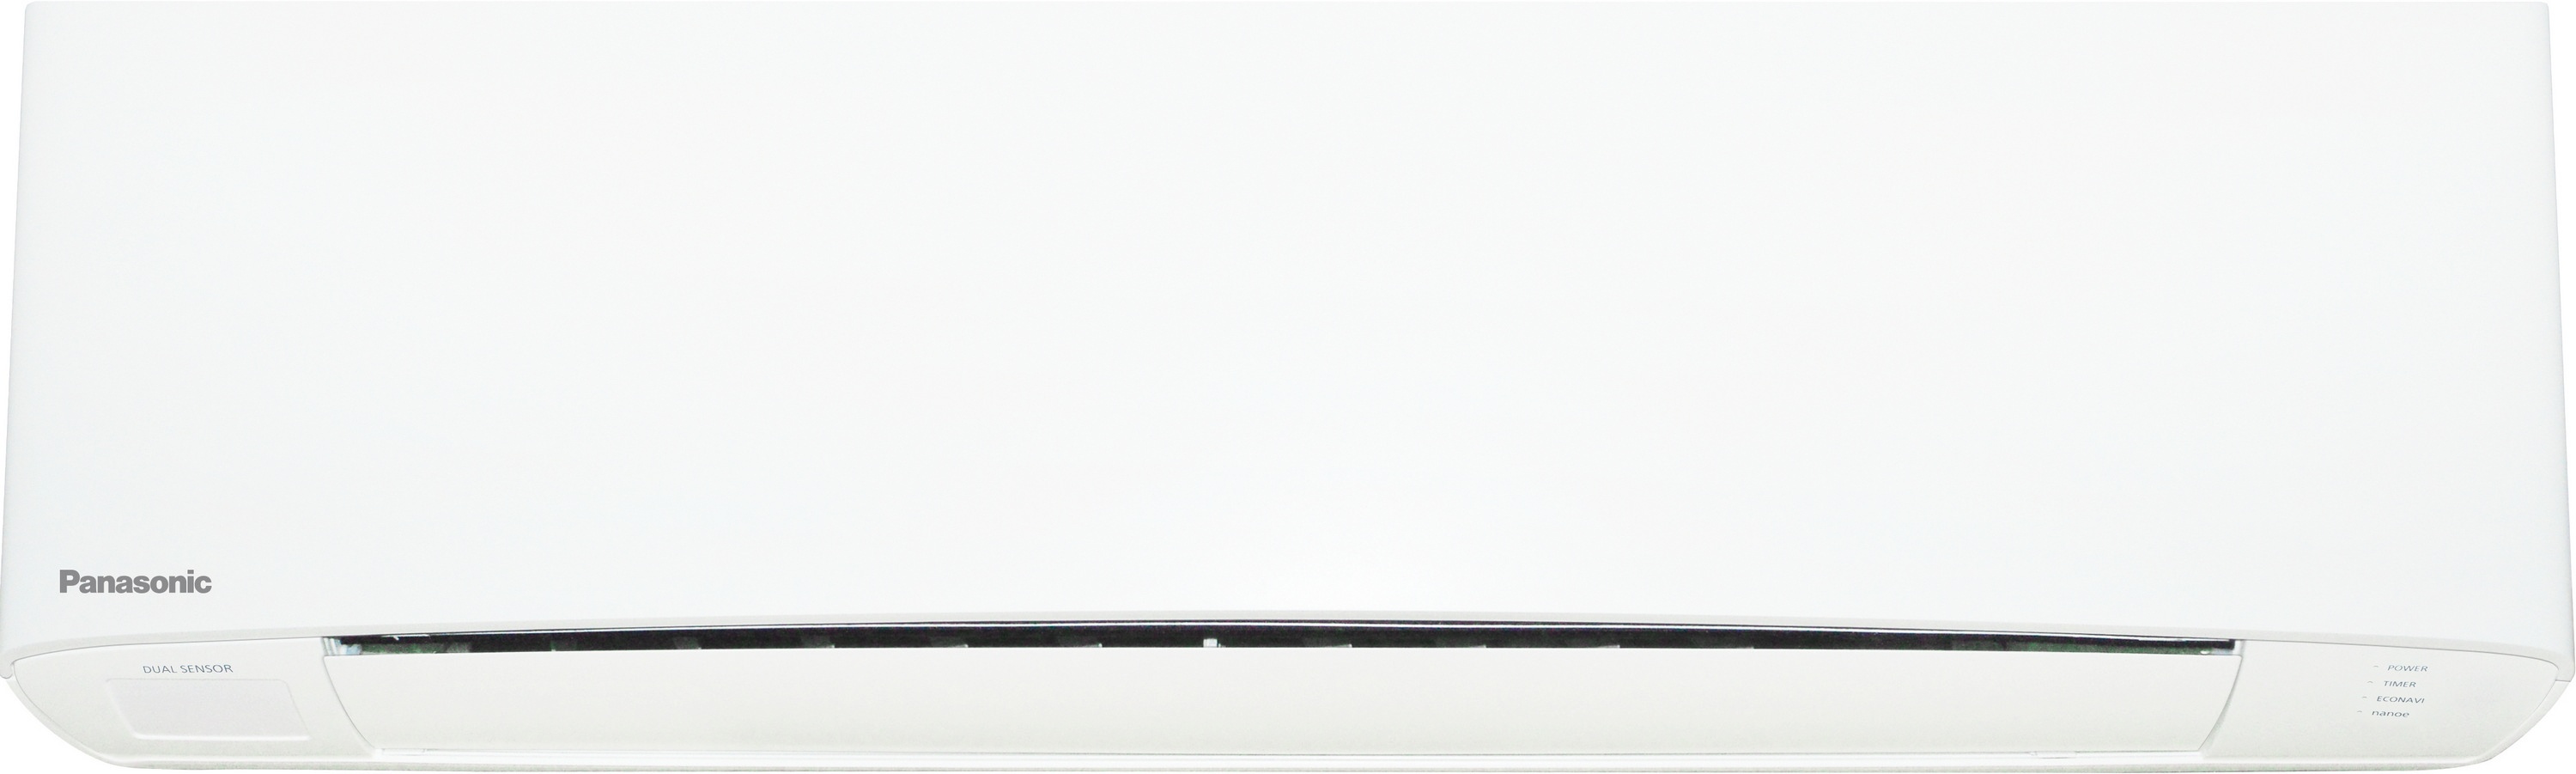 Внутренний блок мультисплит-системы Panasonic Flagship White CS-Z50TKEW цена 40000.00 грн - фотография 2